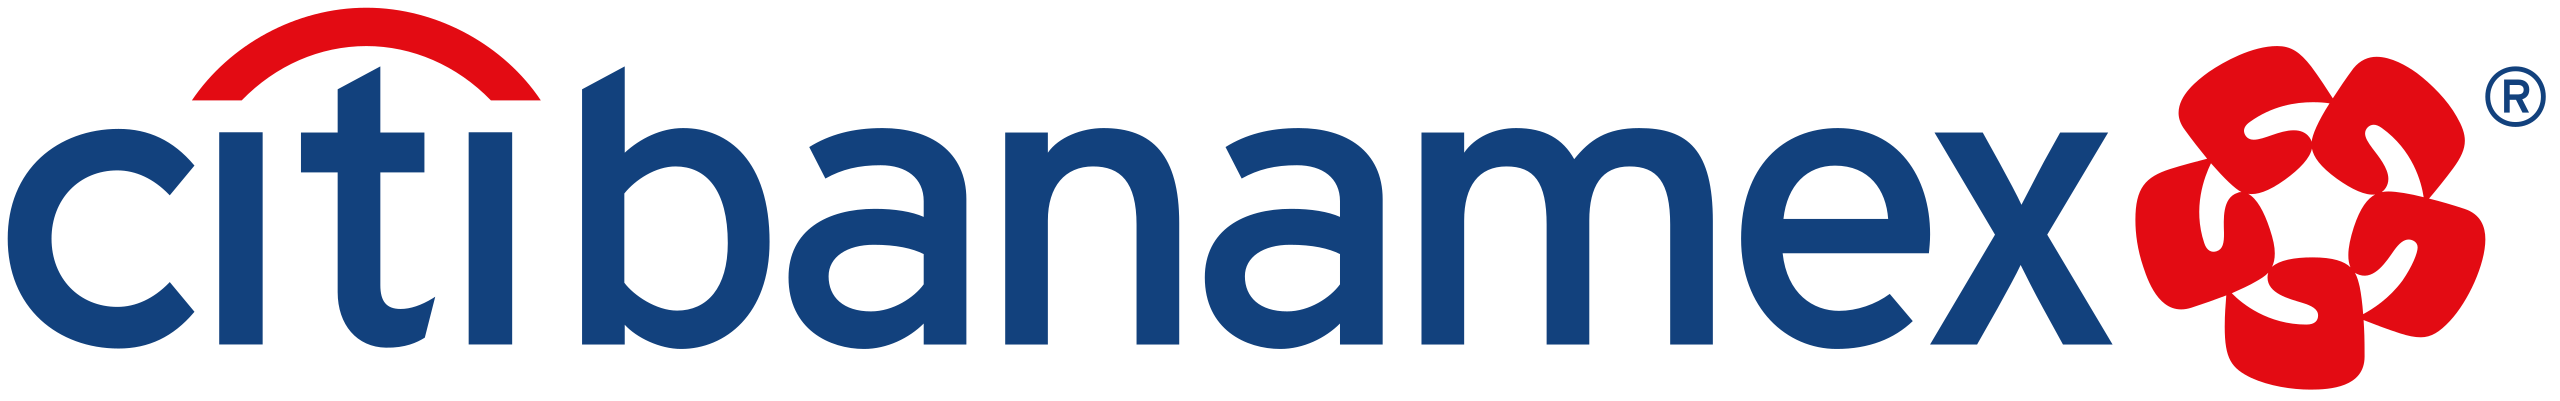 bank-logo_21